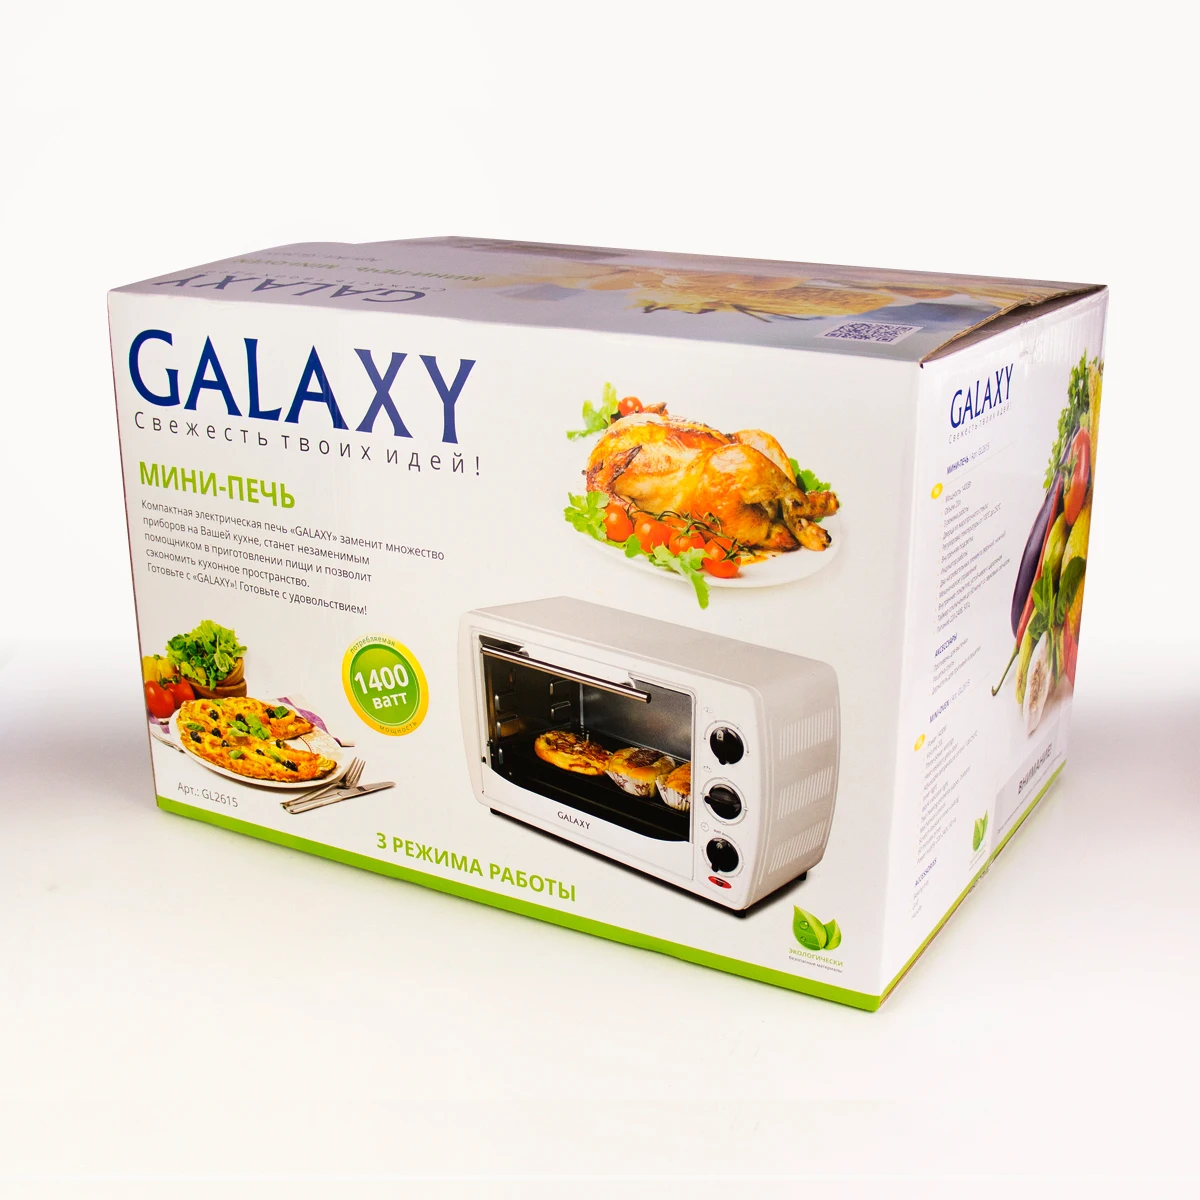 Мини-печь Galaxy GL 2615(мощность 1400 Вт, объем 20 л, температурный режим 100-250°С, таймер, подсветка, 2 нагревательных элемента